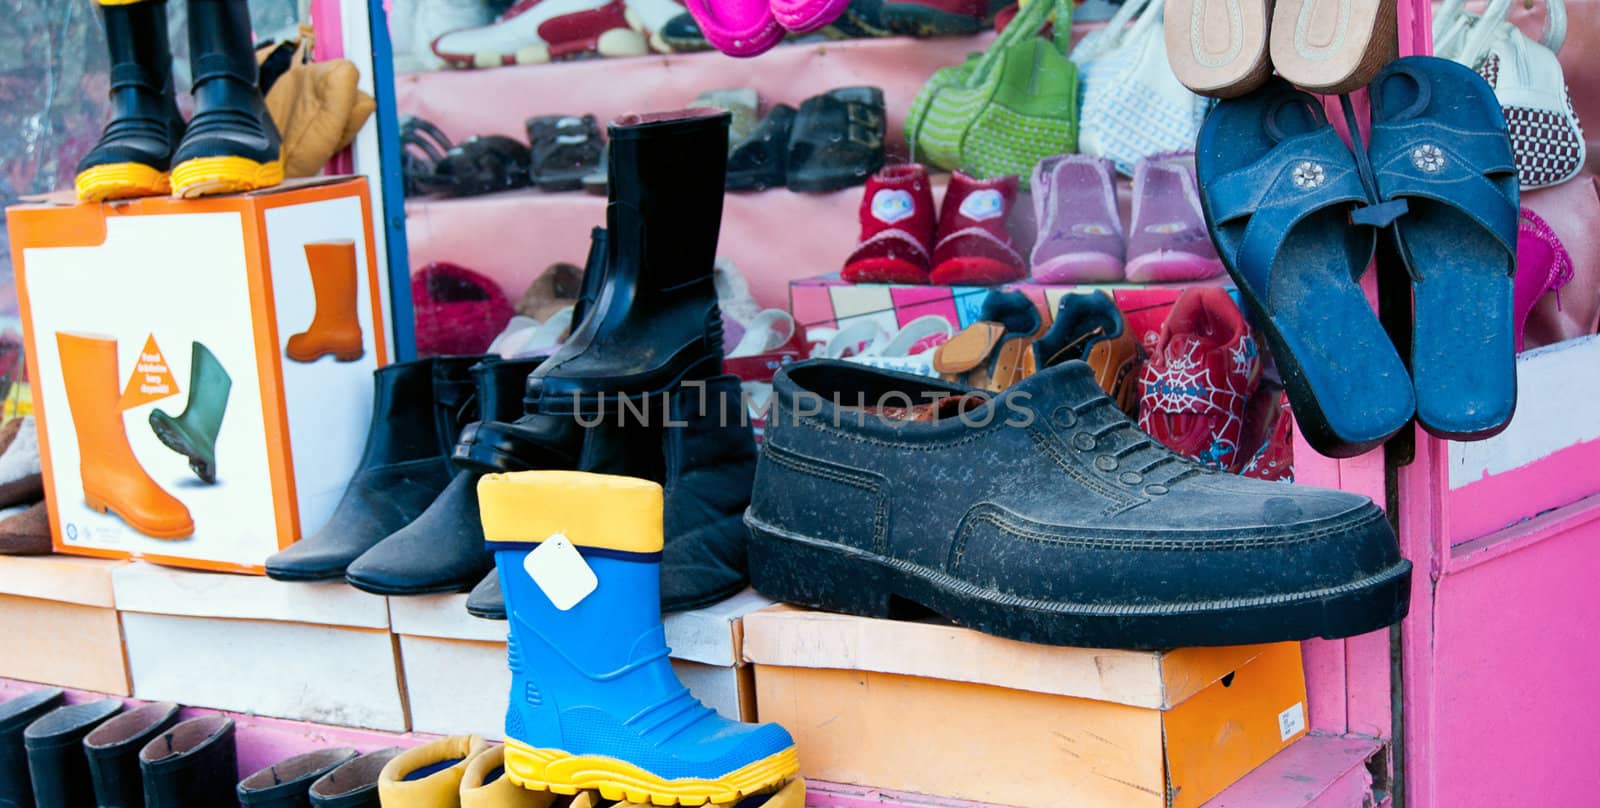 Footwear shop in Turkey. Focus on bigfoot shoe.